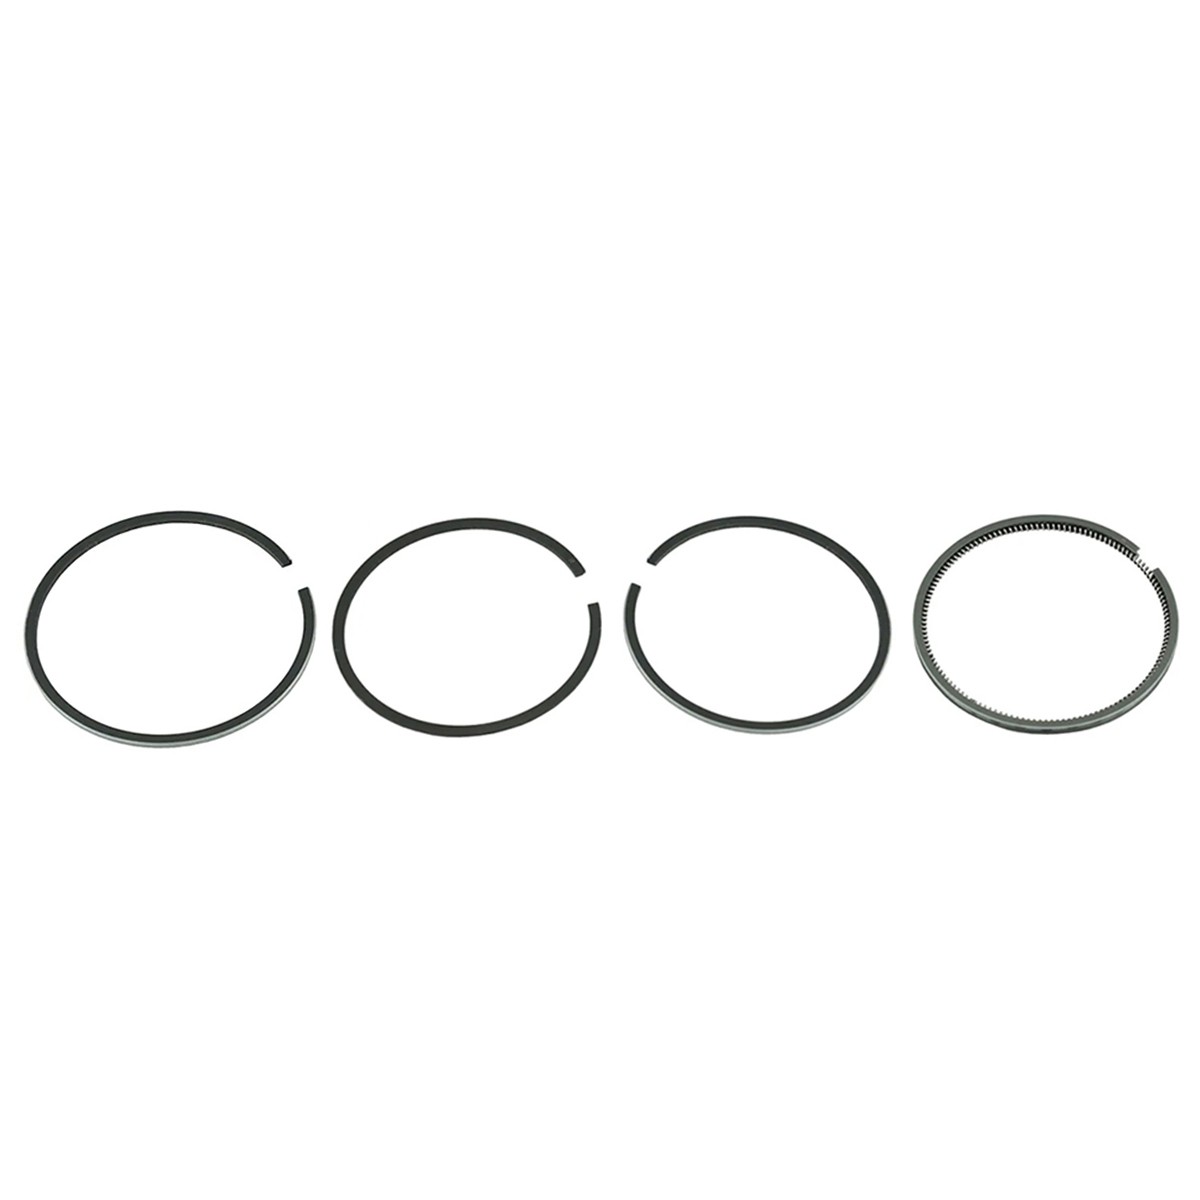 Pístní kroužky / Ø 92 mm / 2,50 x 2,00 x 2,00 x 4,50 mm / Hinomoto E23 / Toyosha P126 / 2201-9110-000